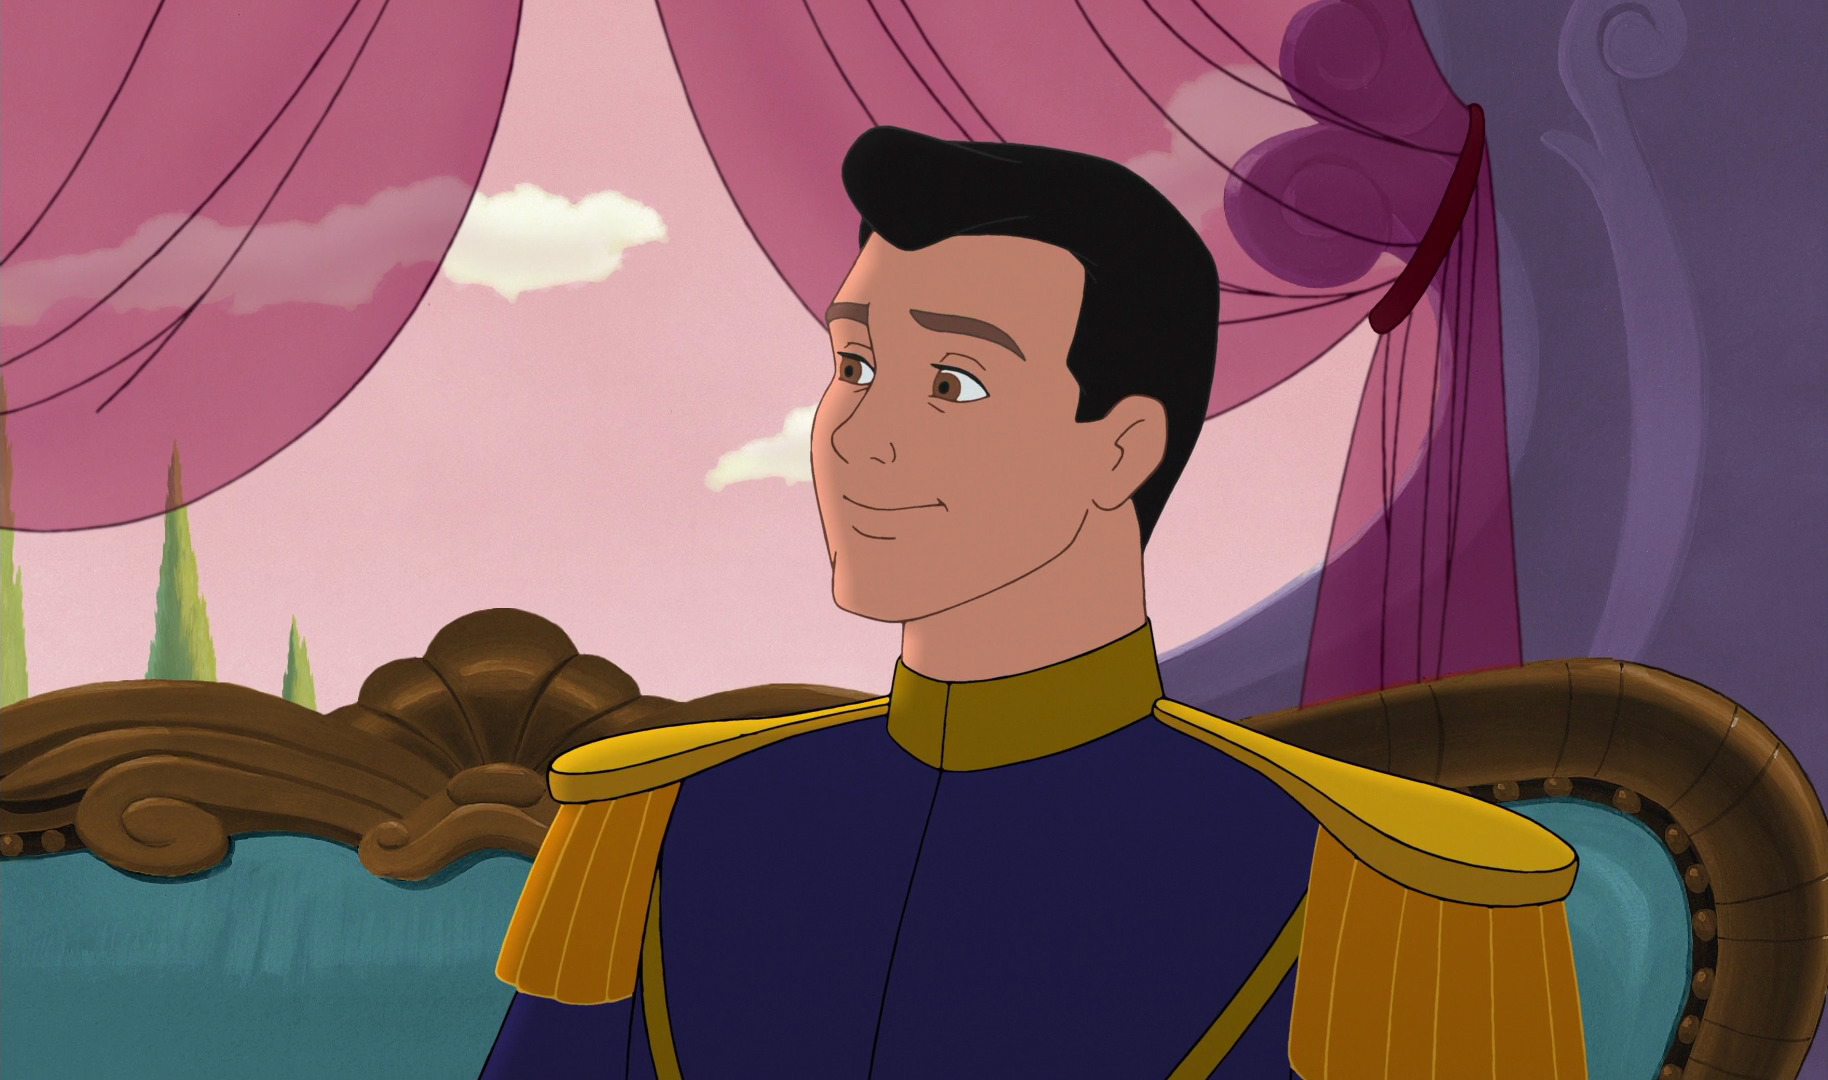  Disney aposta em filme sobre o Príncipe Encantado